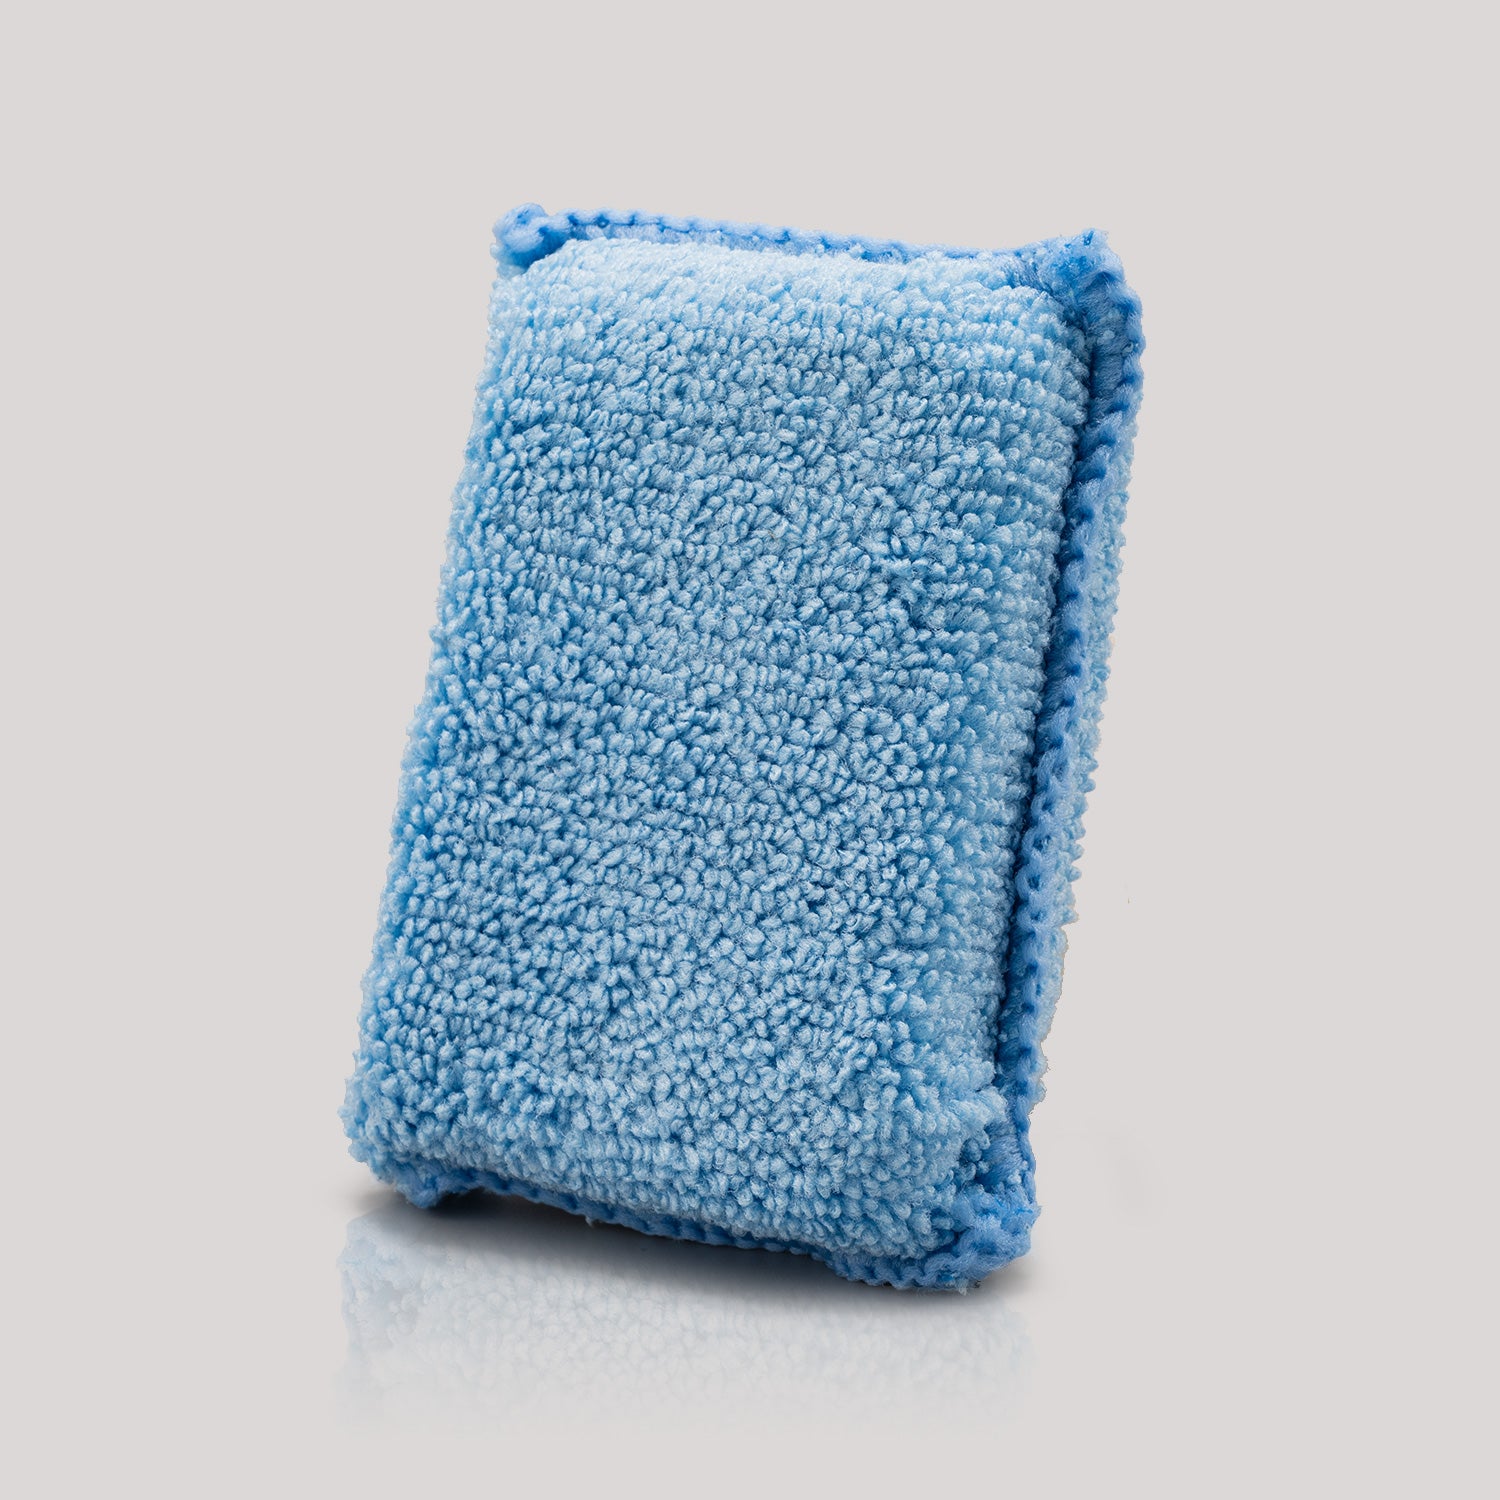 Microfiber Towels and Applicators